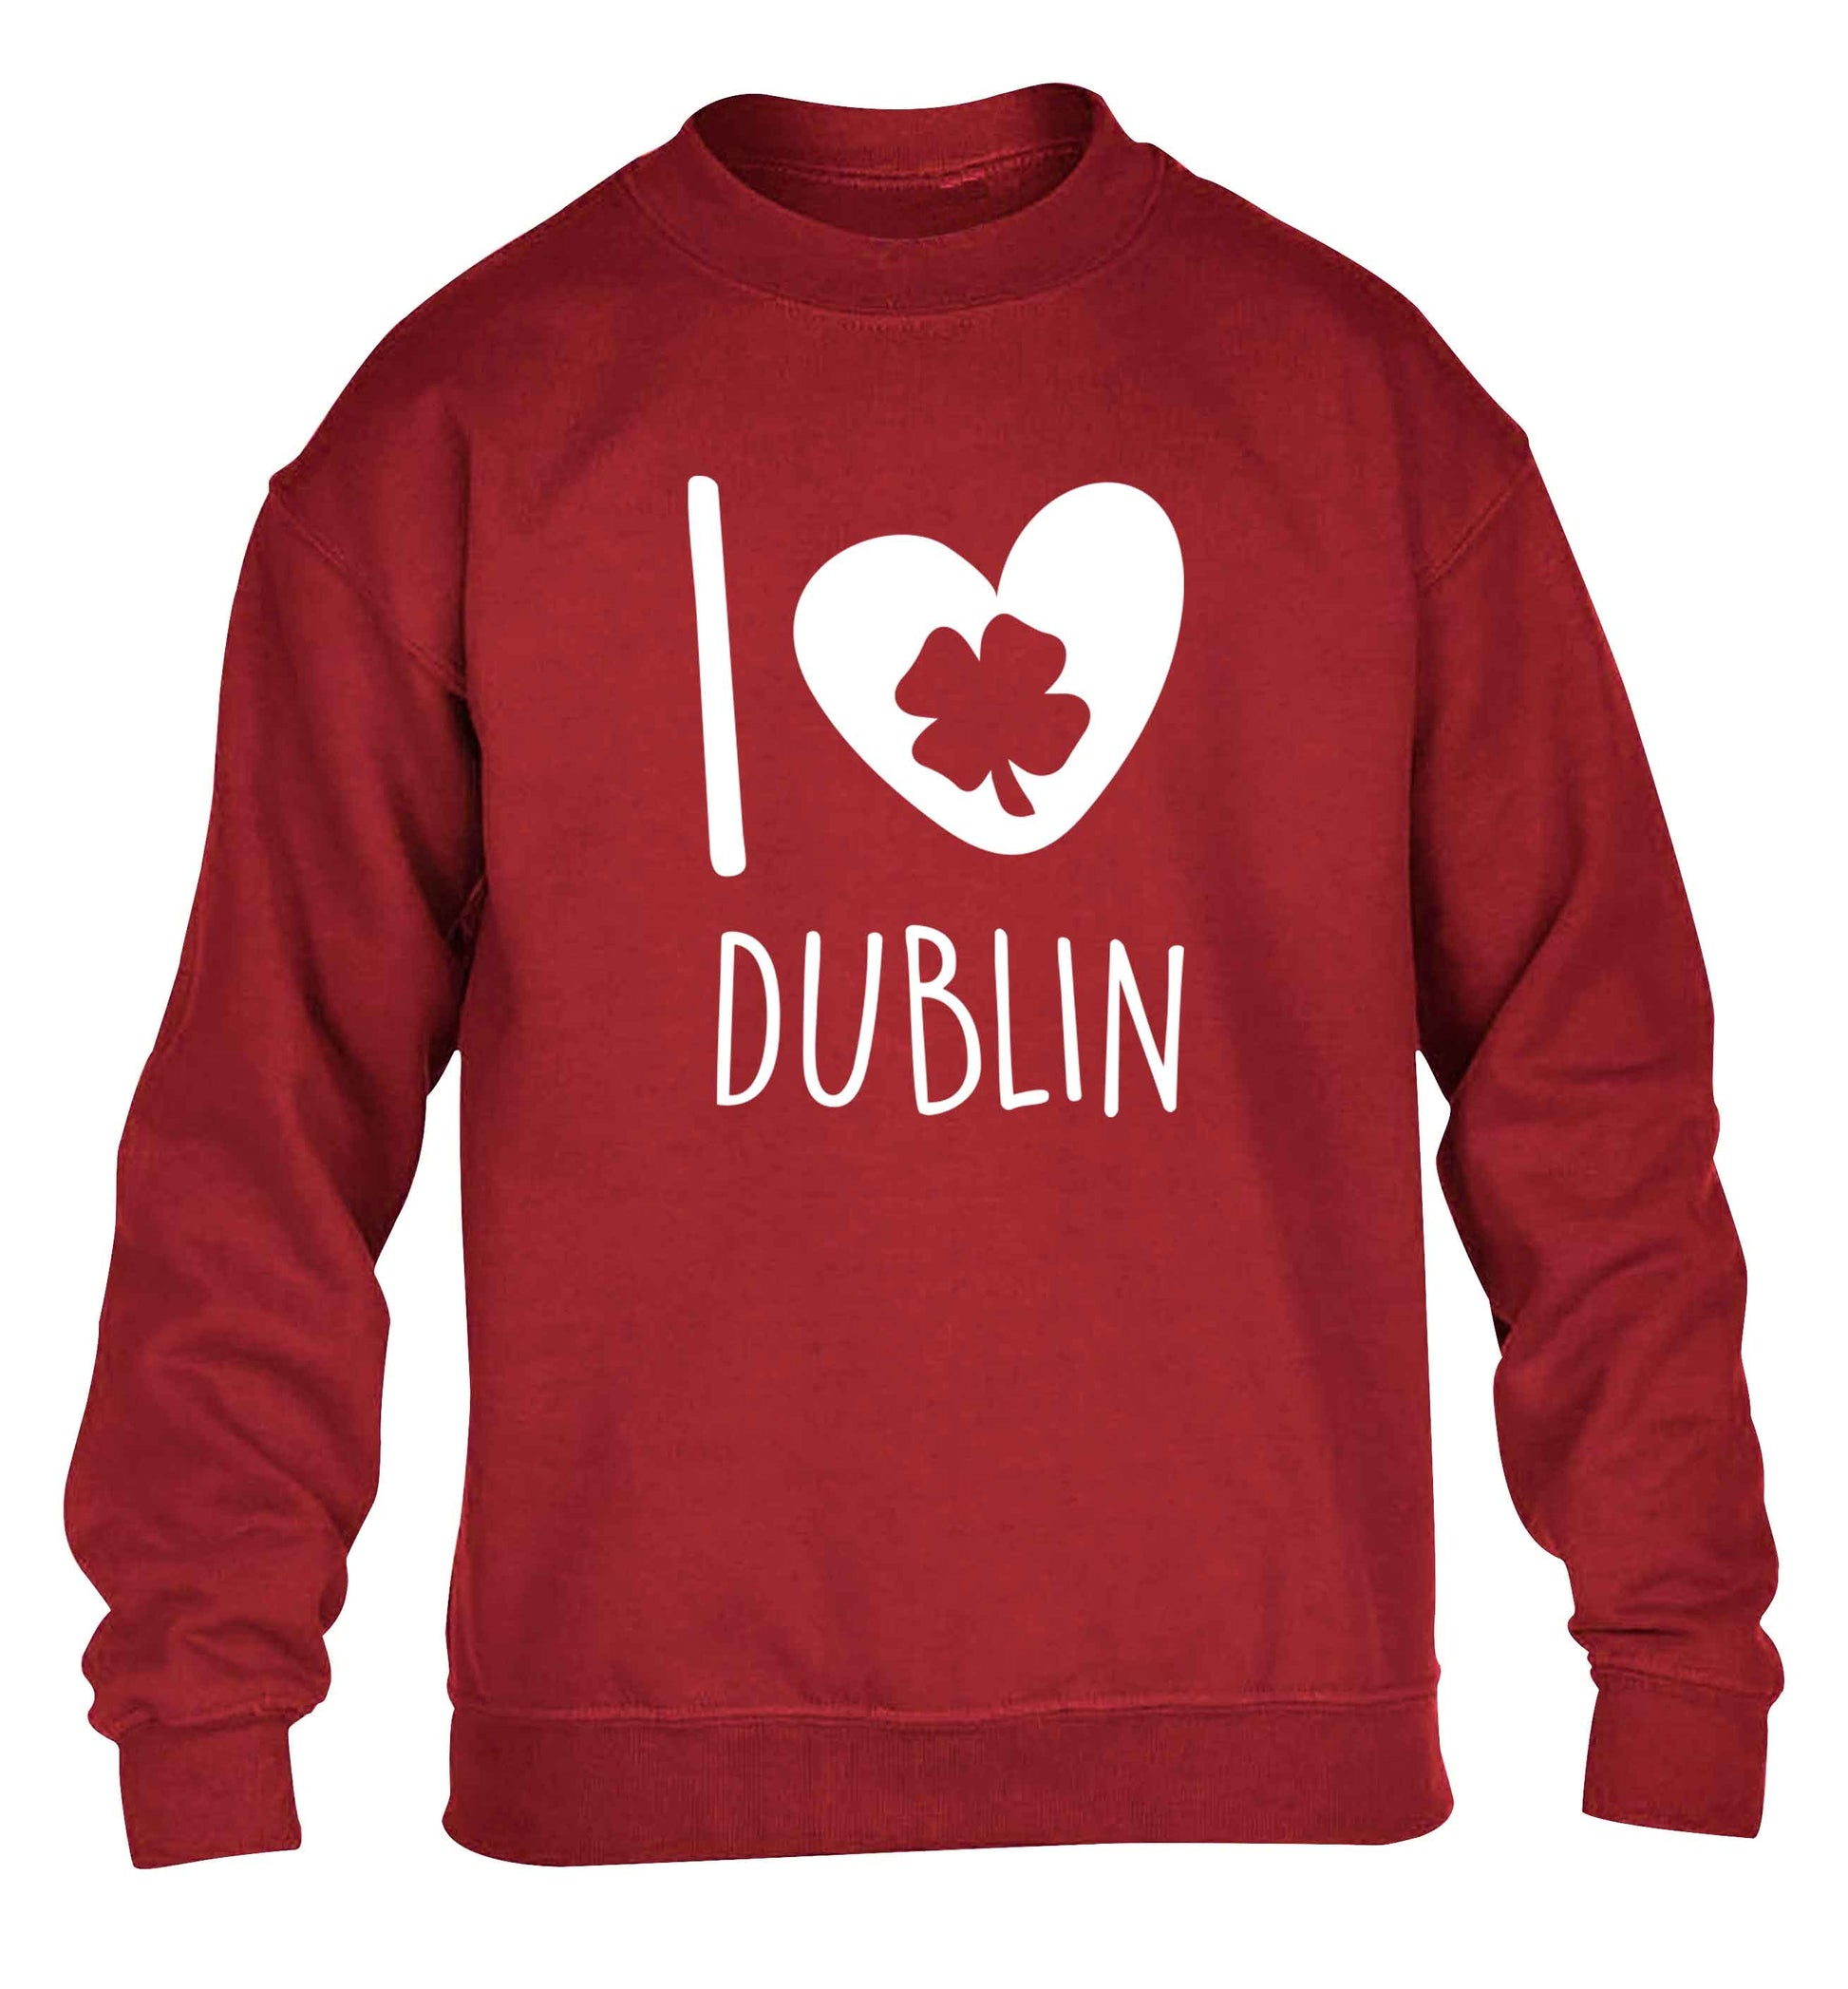 I love Dublin children's grey sweater 12-13 Years